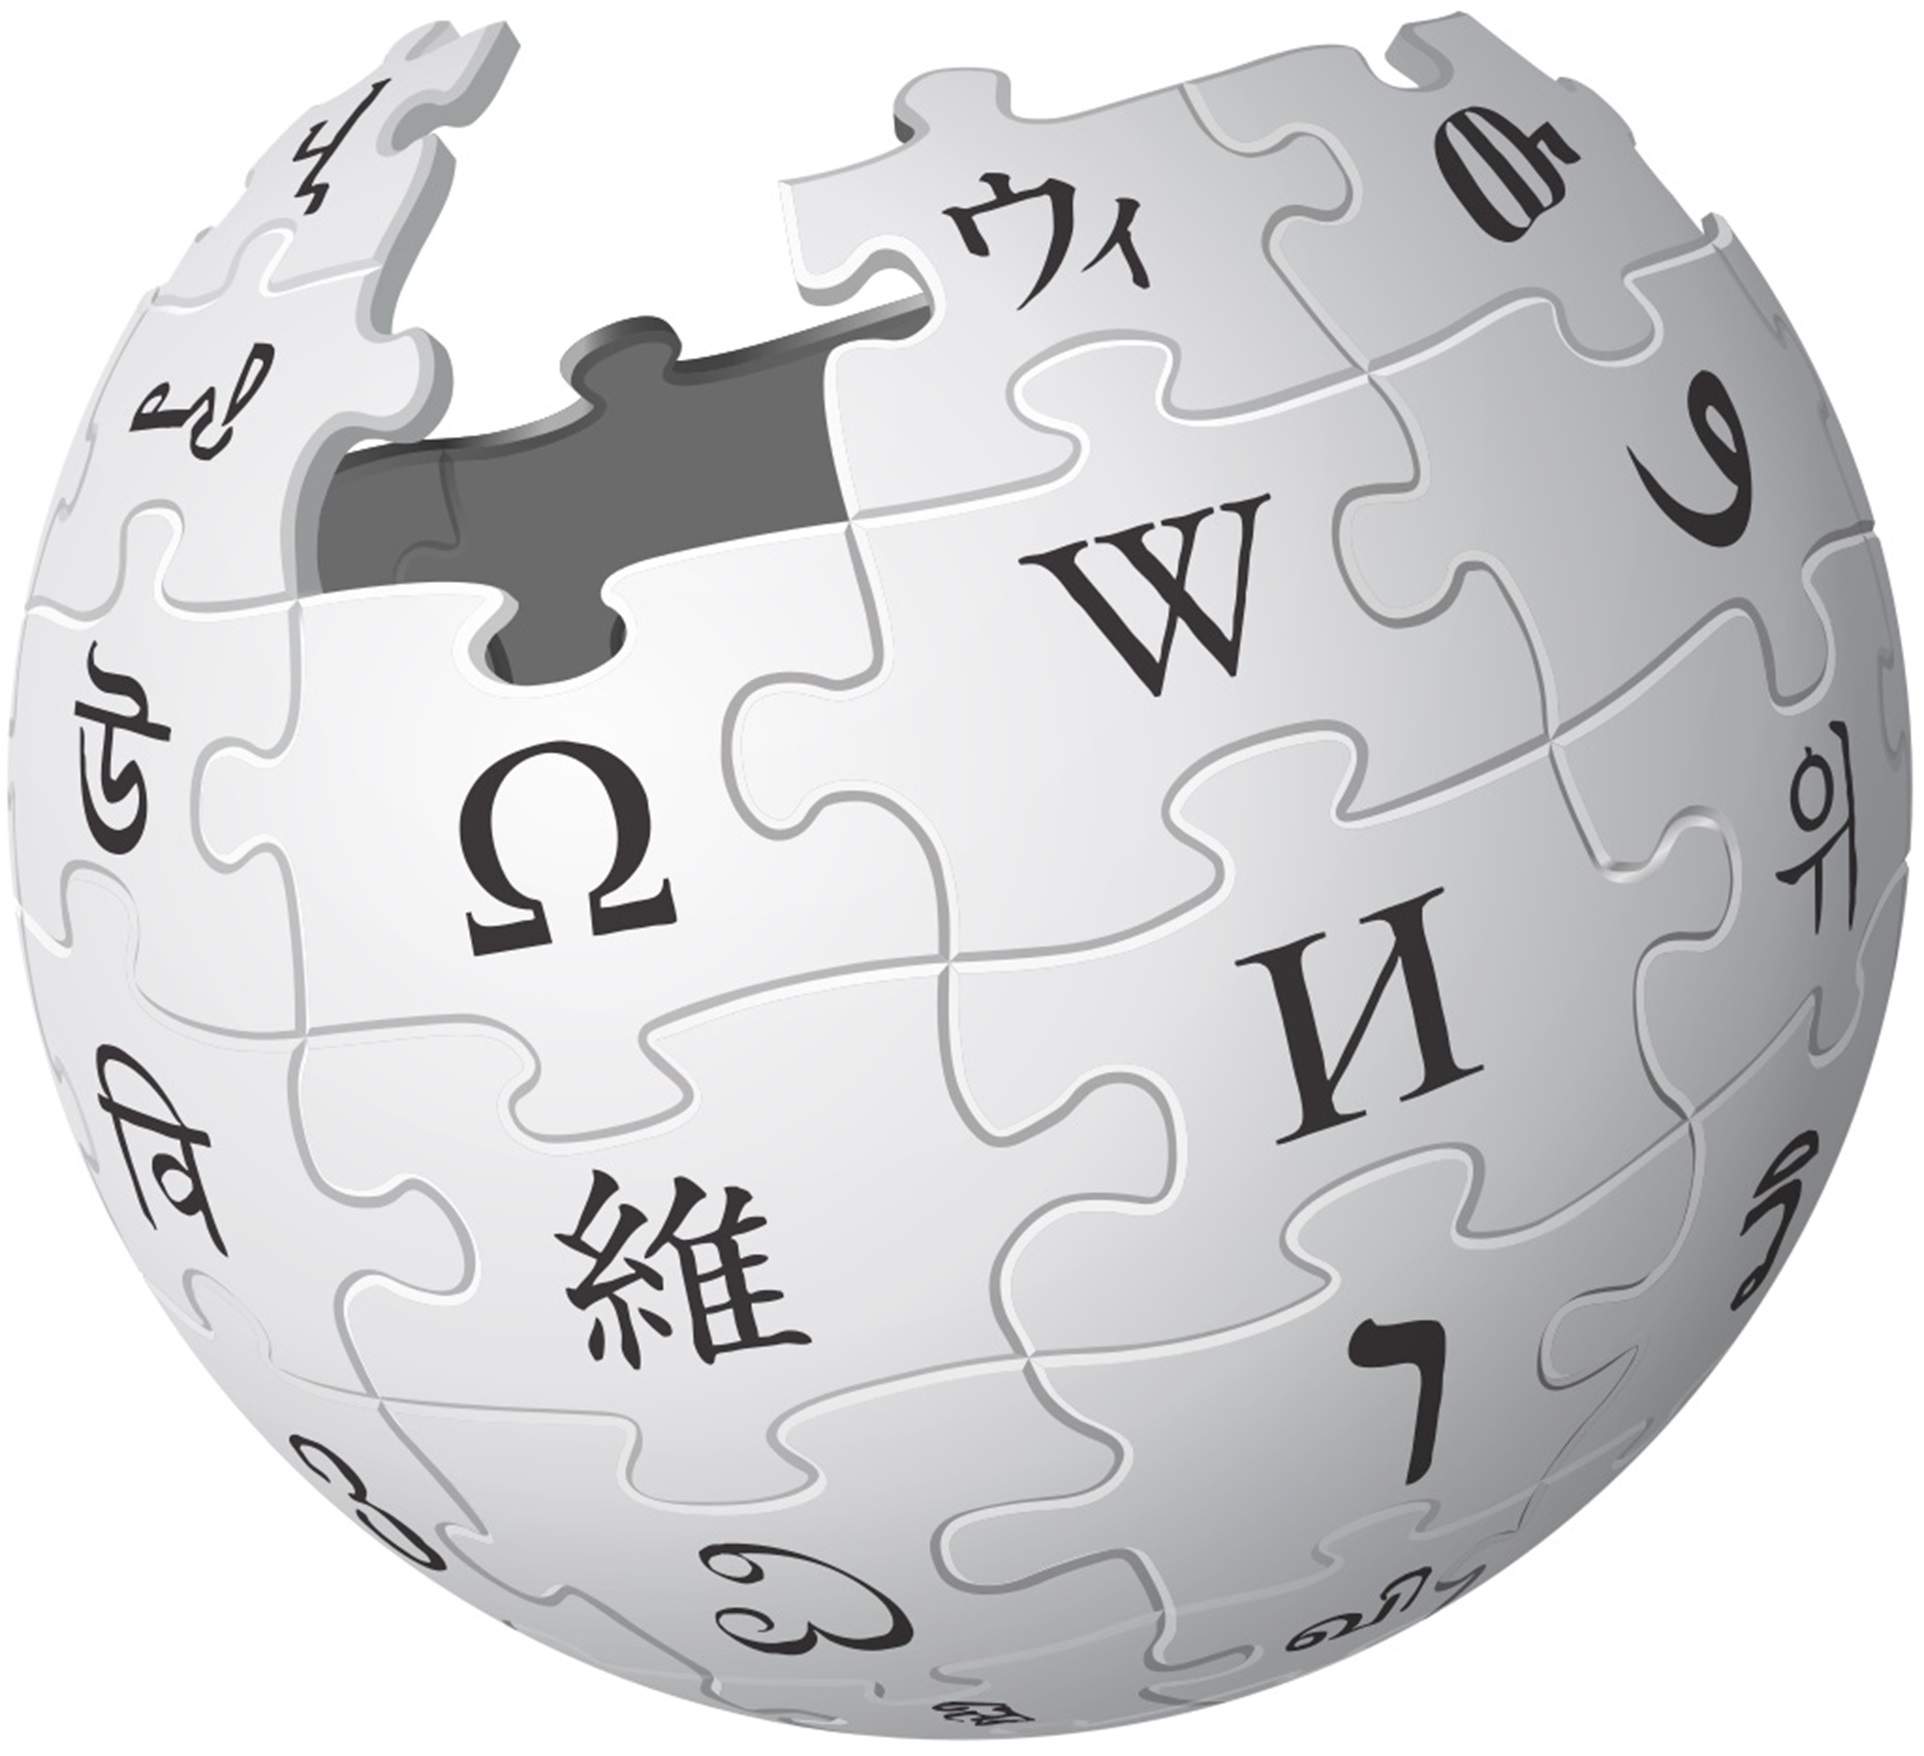 La Viquipèdia, en el top 5 del ranking de los 10.000 artículos que toda enciclopedia tendría que tener